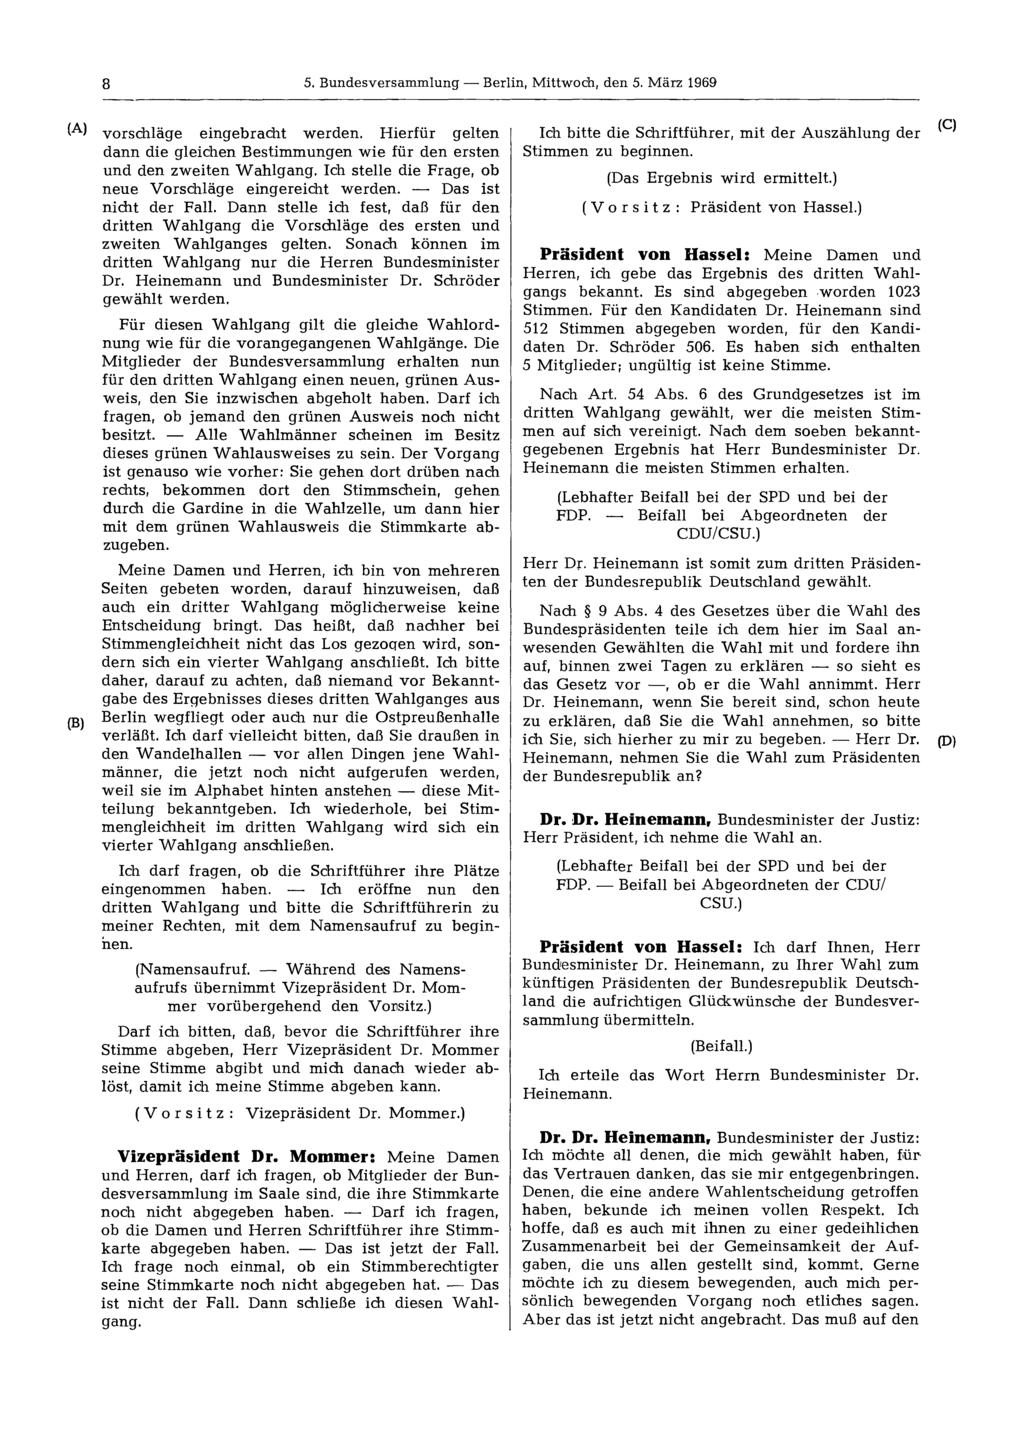 8 5. Bundesversammlung Berlin, Mittwoch, den 5. März 1969 vorschläge eingebracht werden. Hierfür gelten dann die gleichen Bestimmungen wie für den ersten und den zweiten Wahlgang.